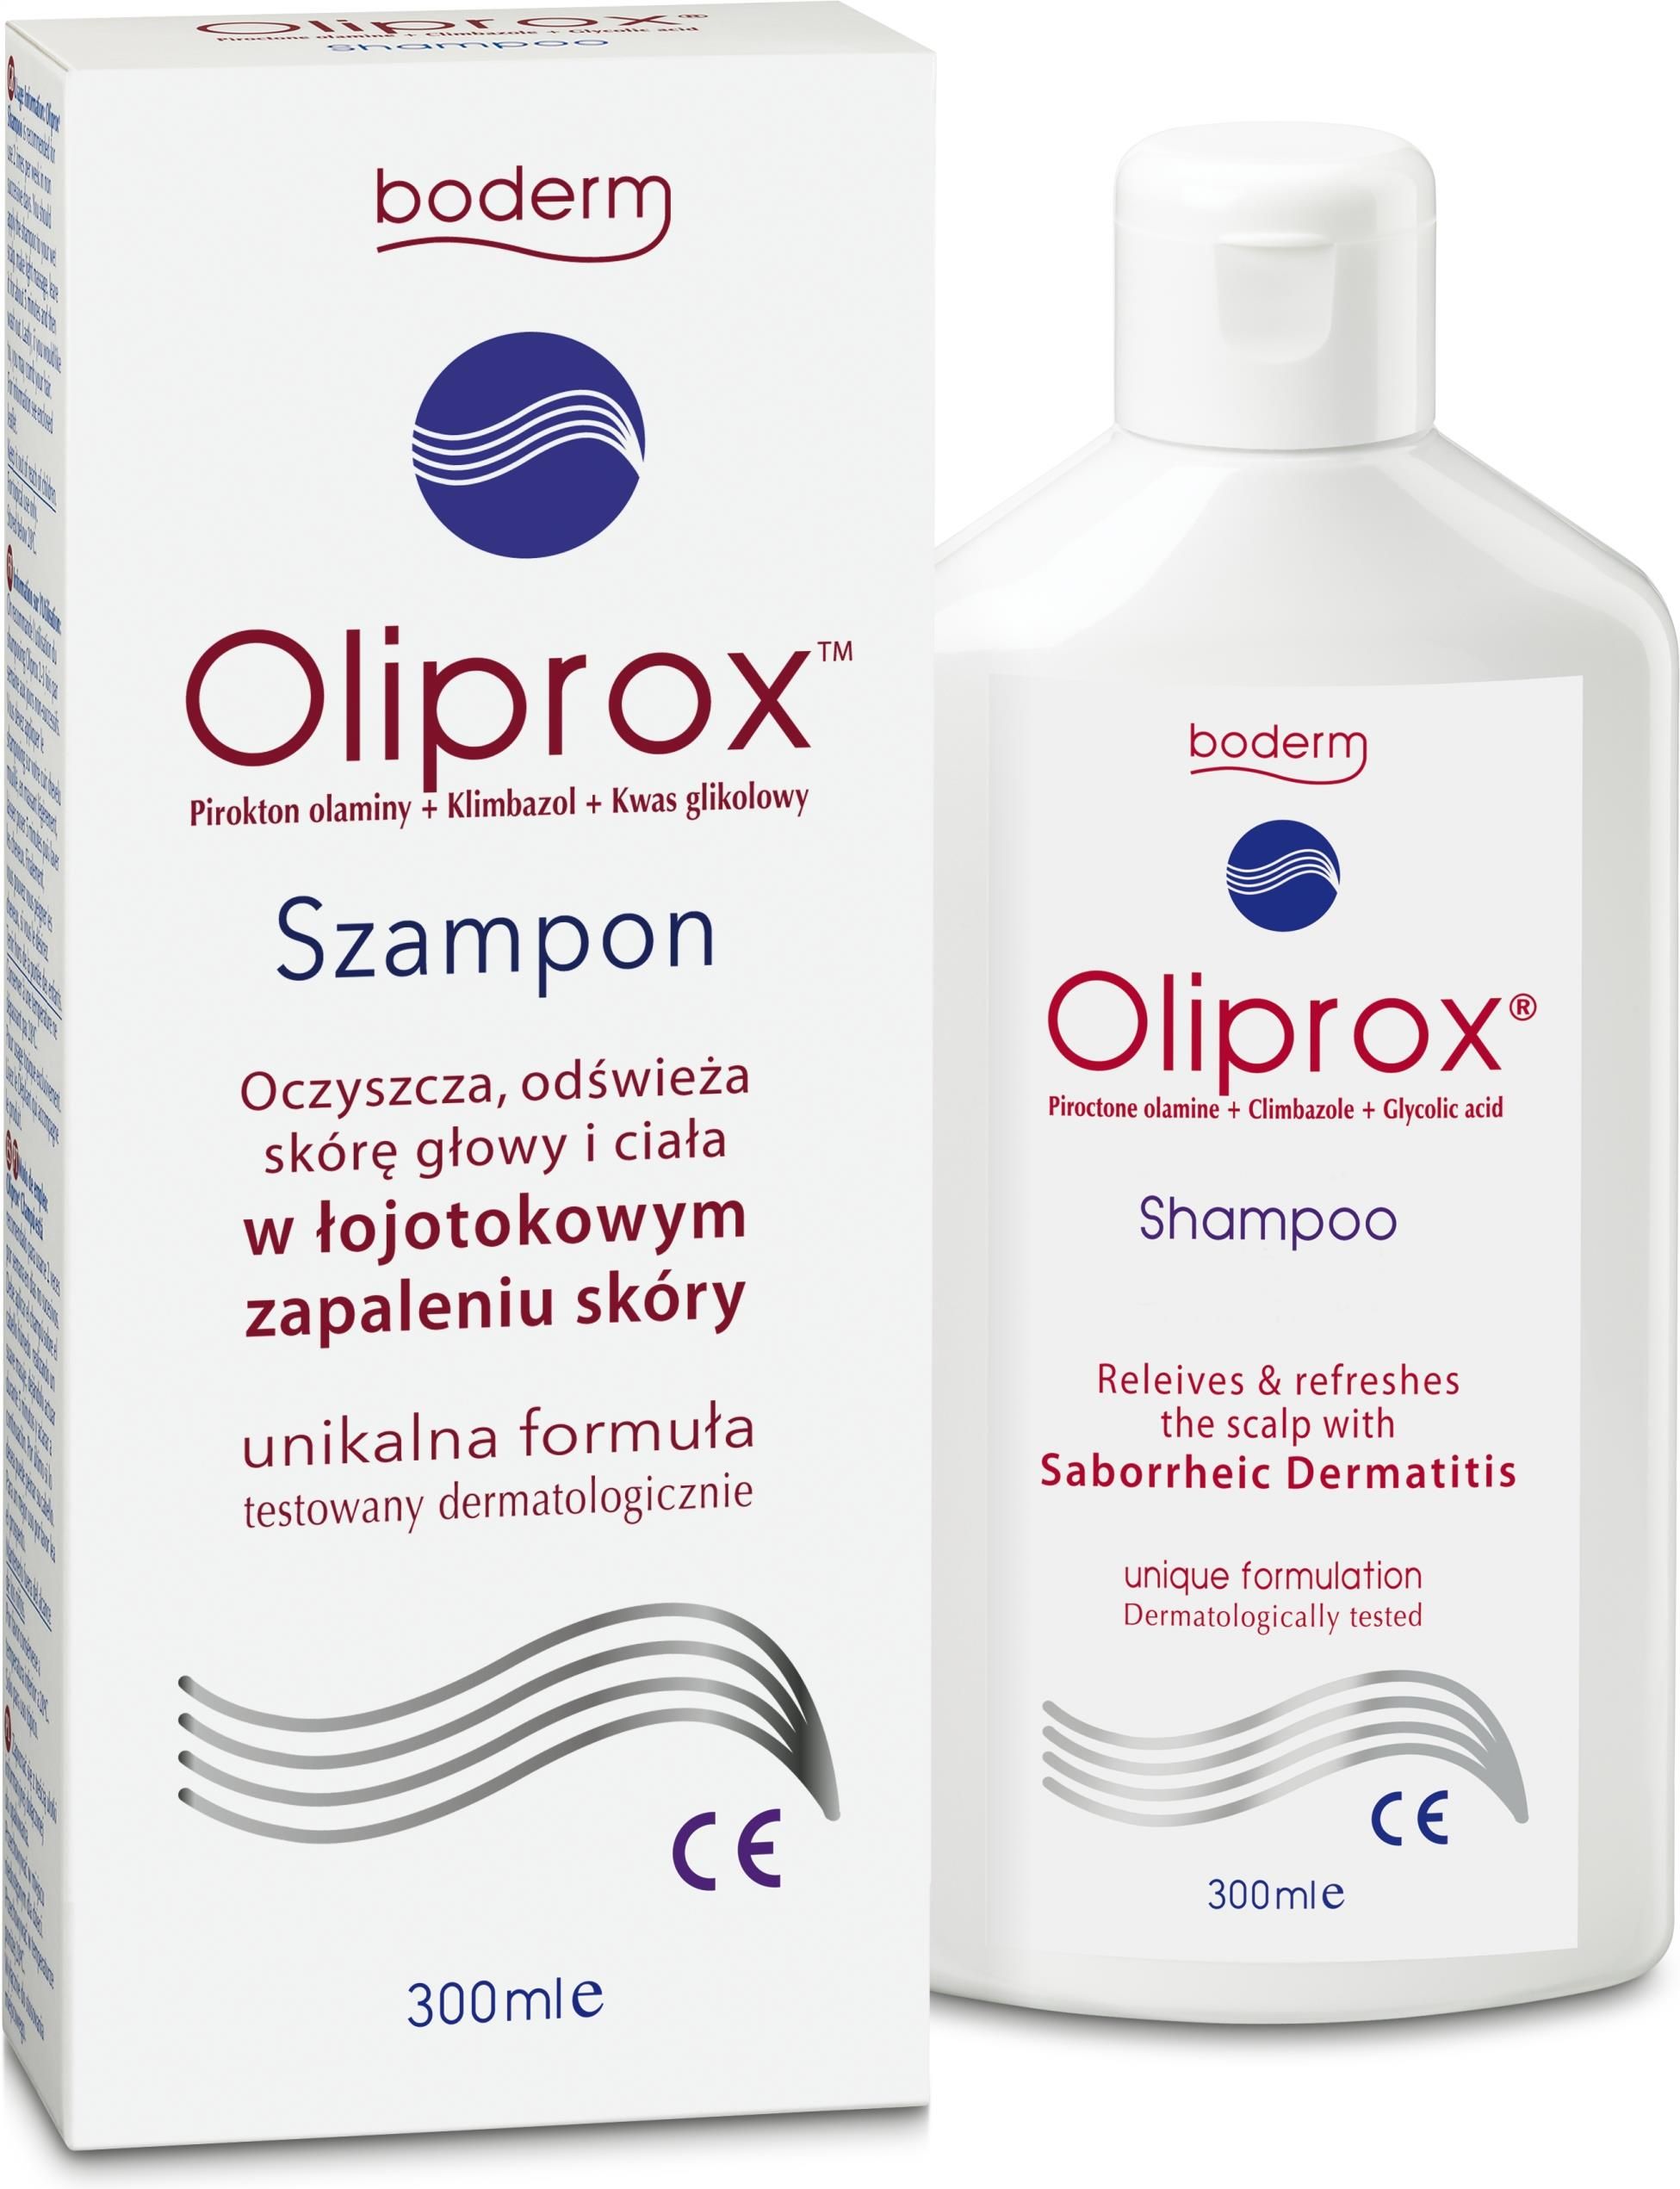 oliprox szampon łzs opinie